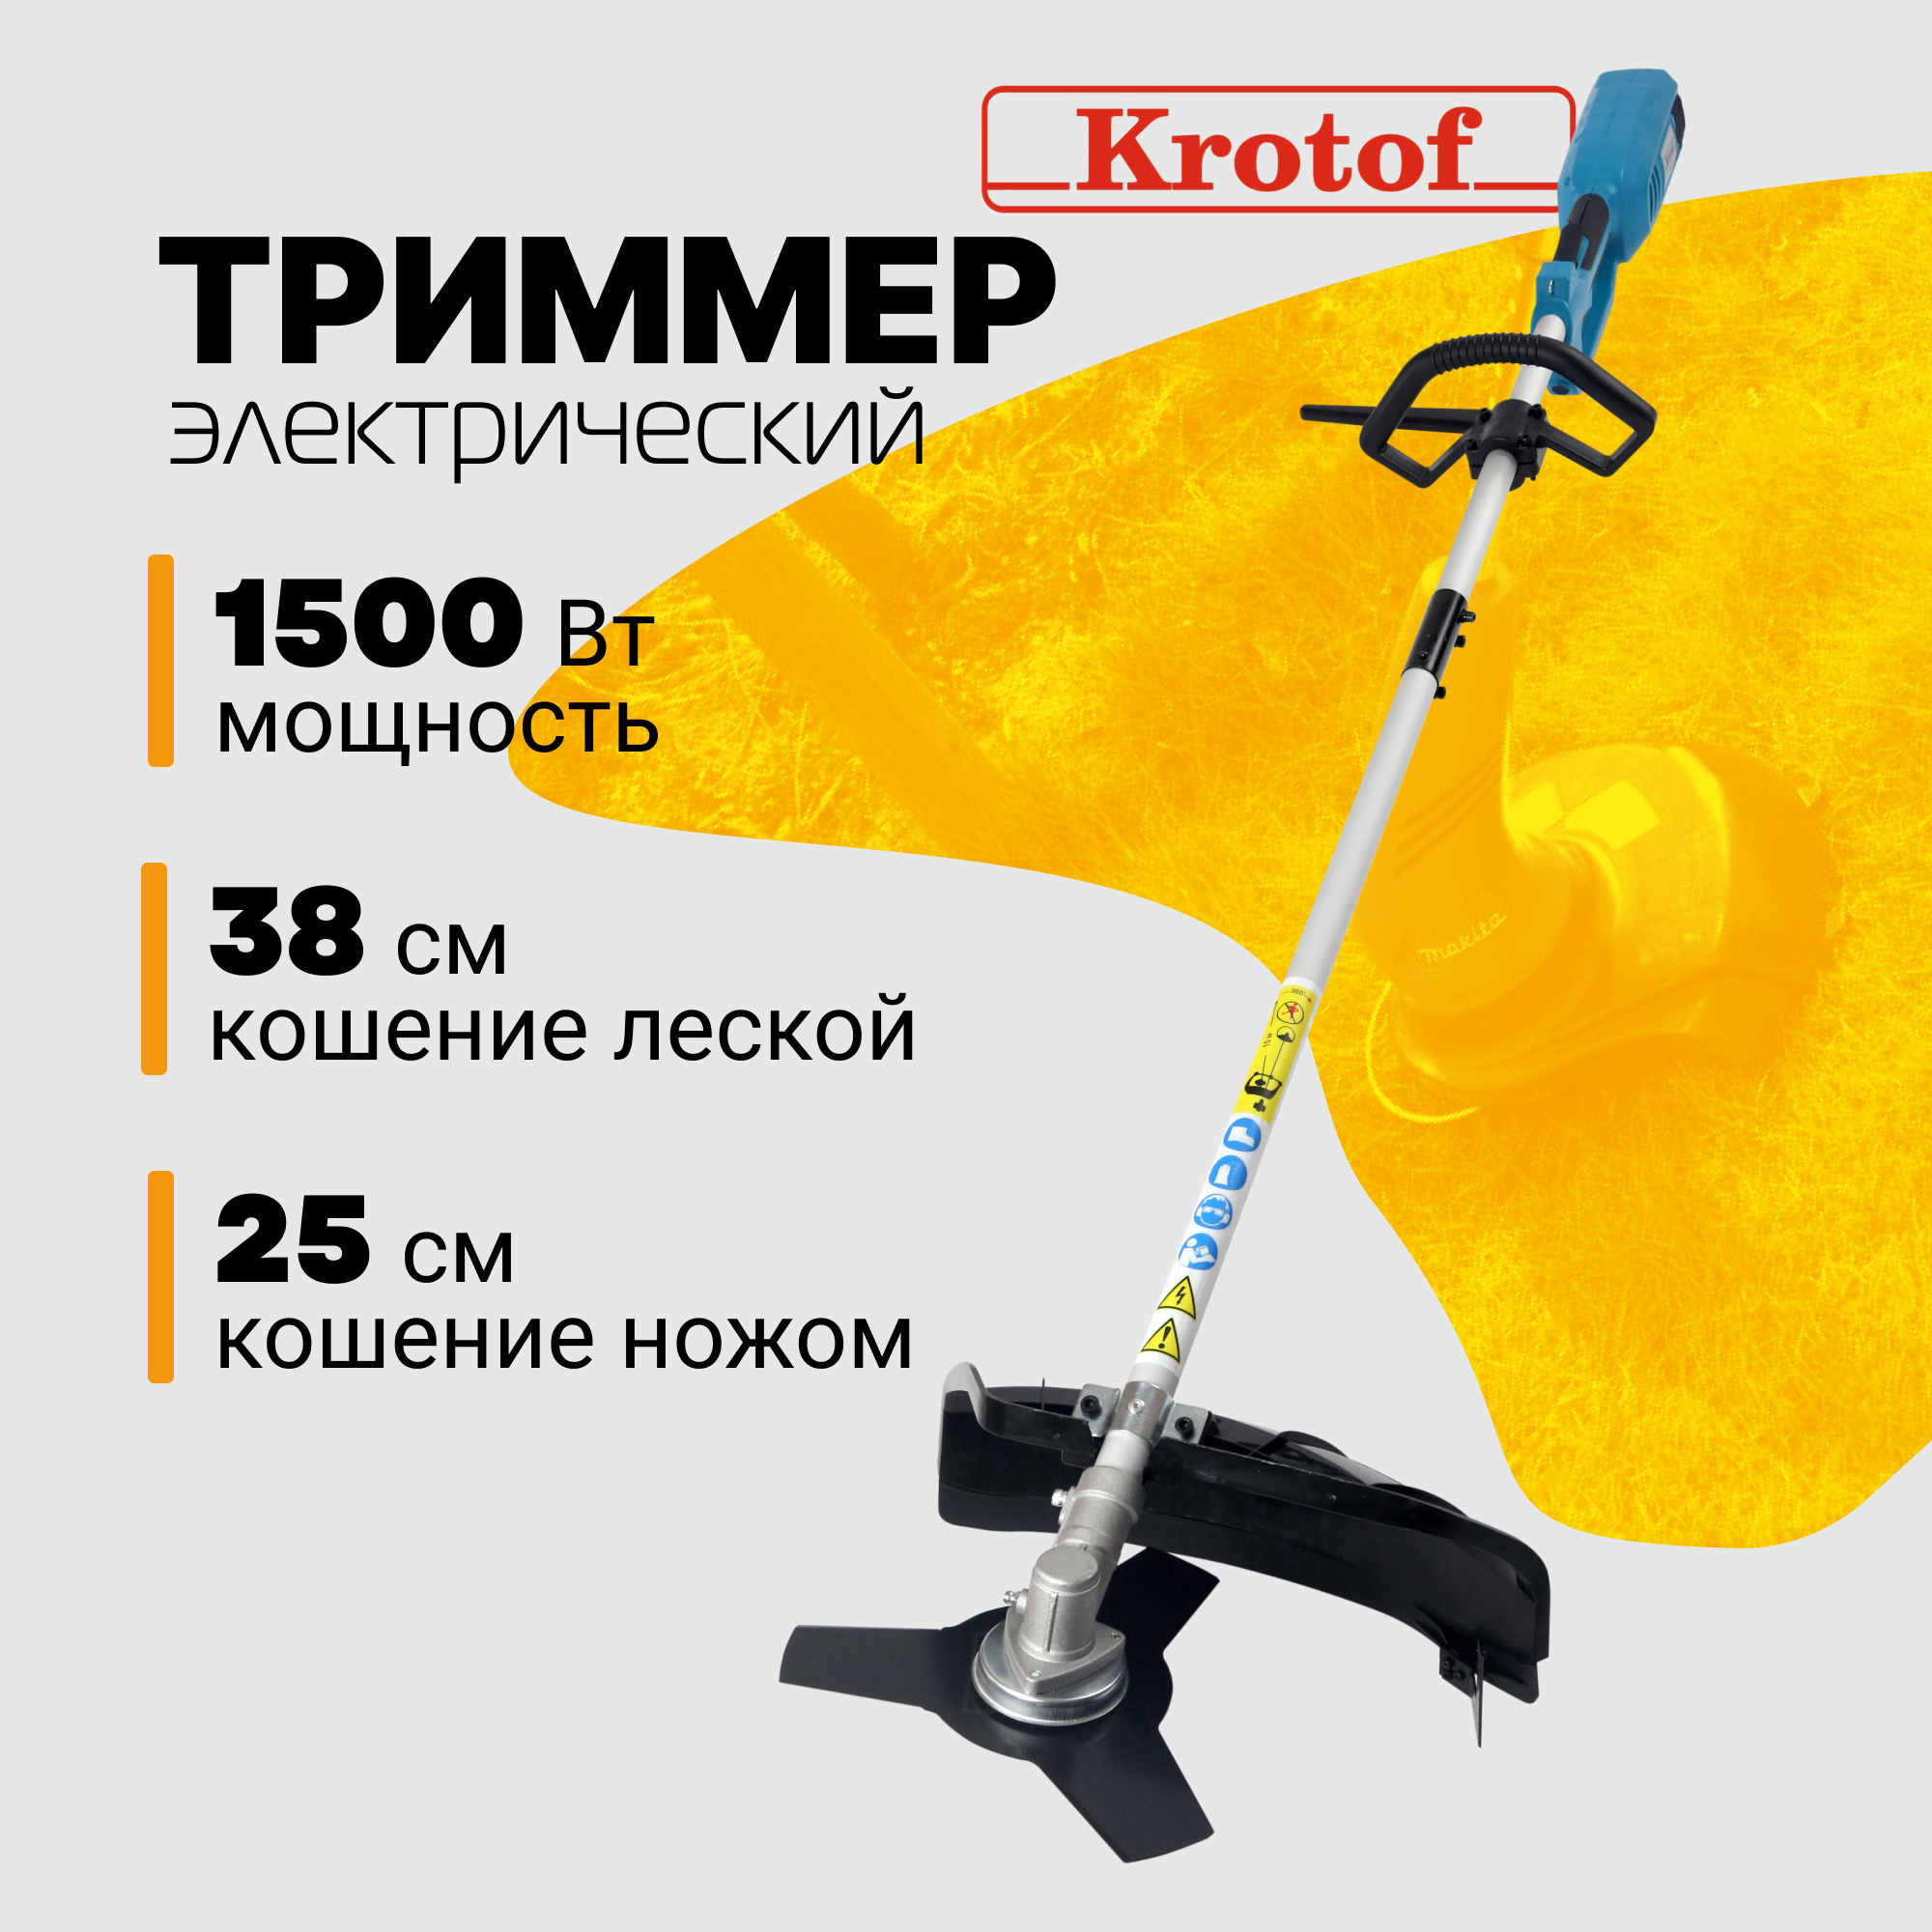 Триммер электрический ЭТ1500Р Krotof (1500 Вт, разъемная штанга, леска + нож 3 зуба)